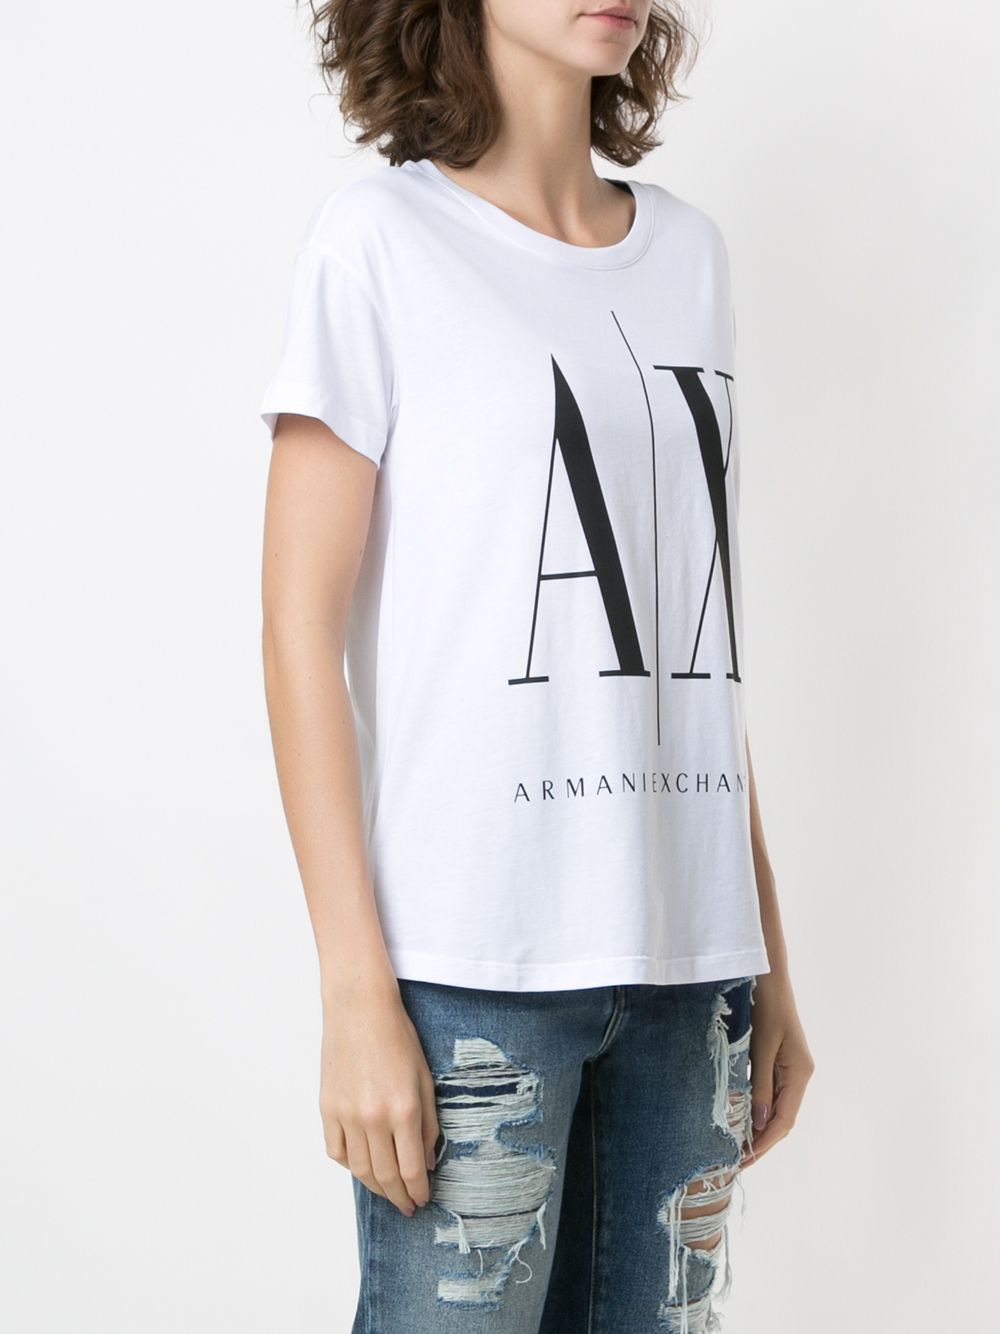 Armani Exchange Logo Print T-shirt Farfetch, 43% OFF